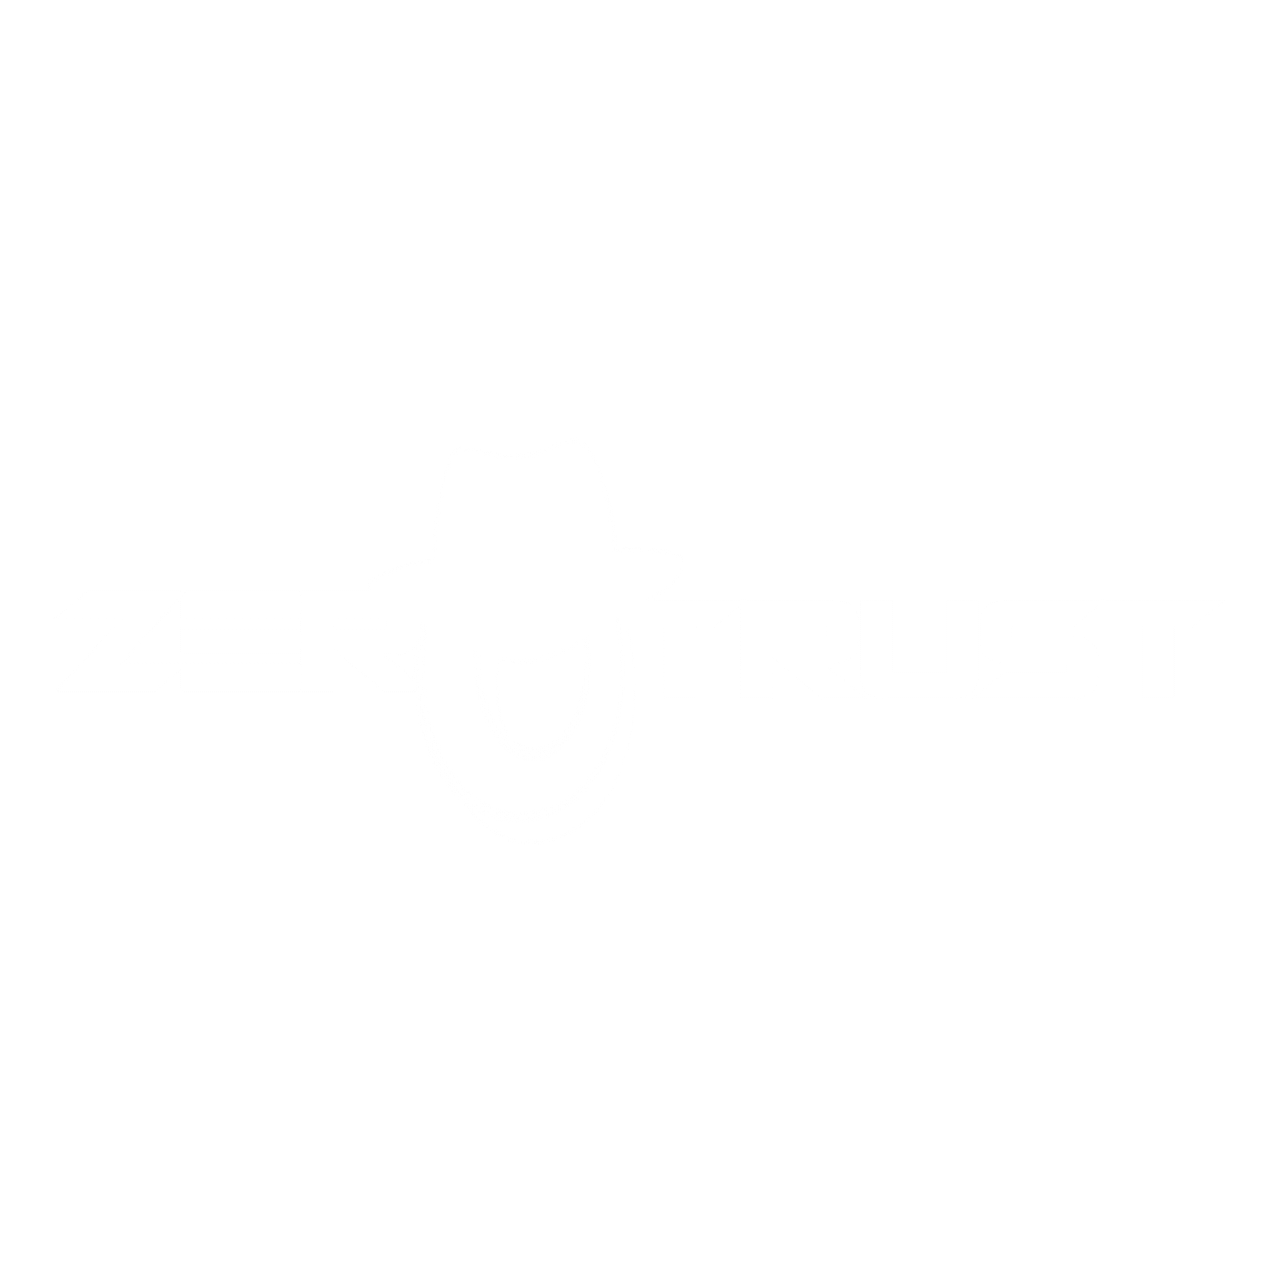 ZeroTrust